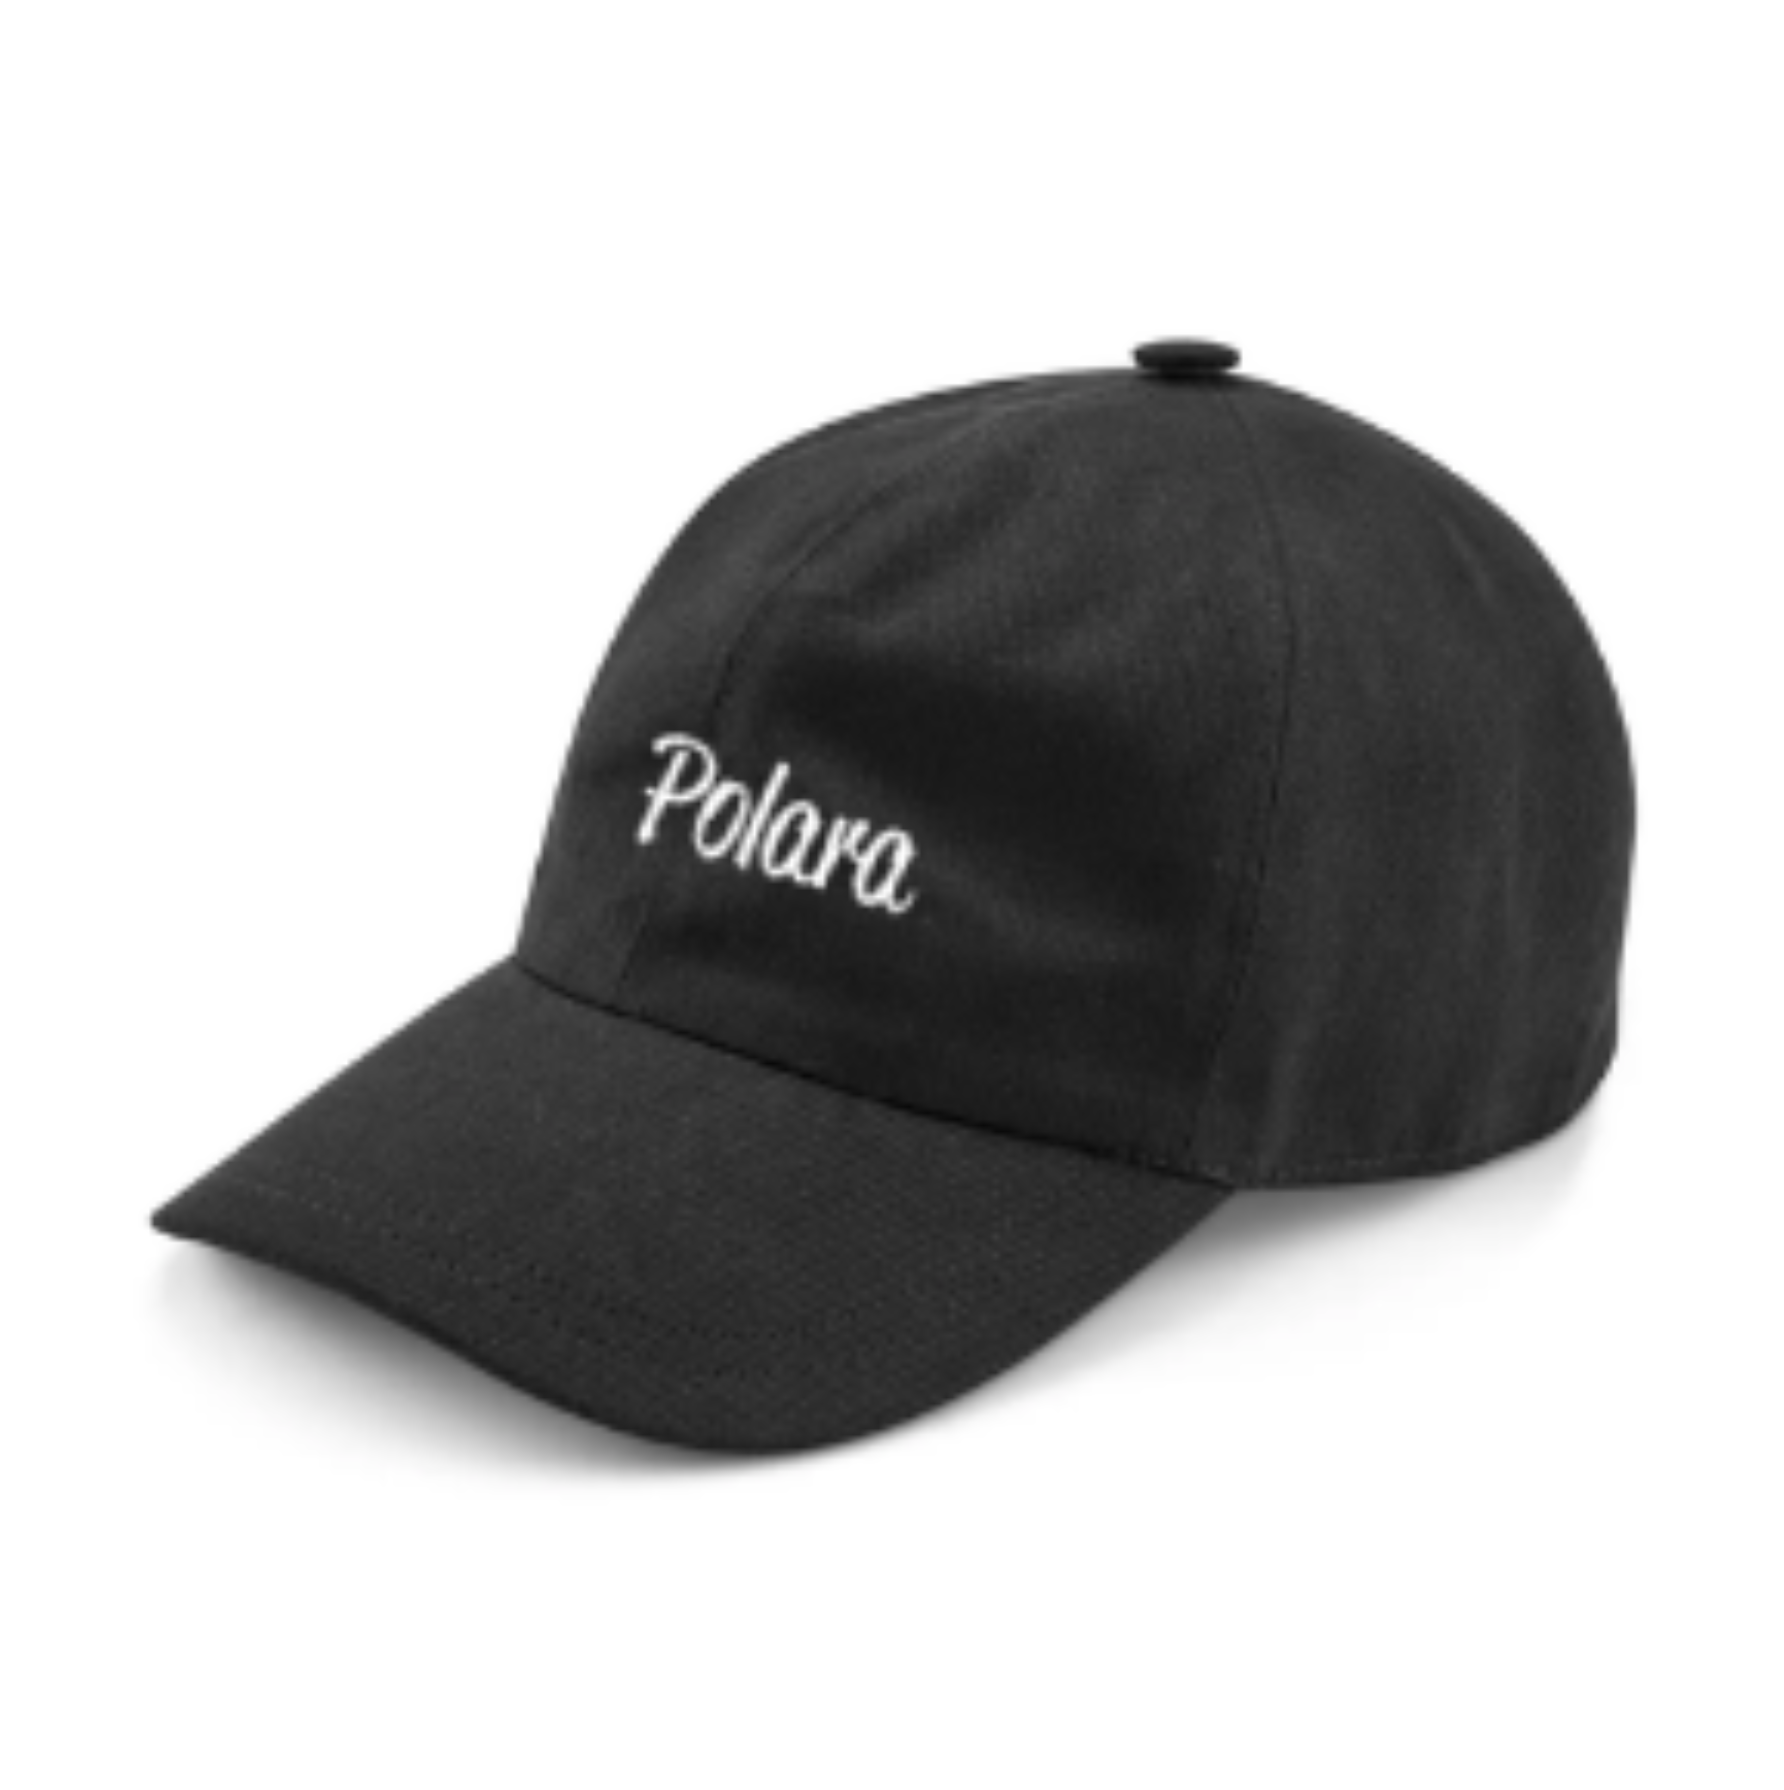 POLARA GOLF HAT